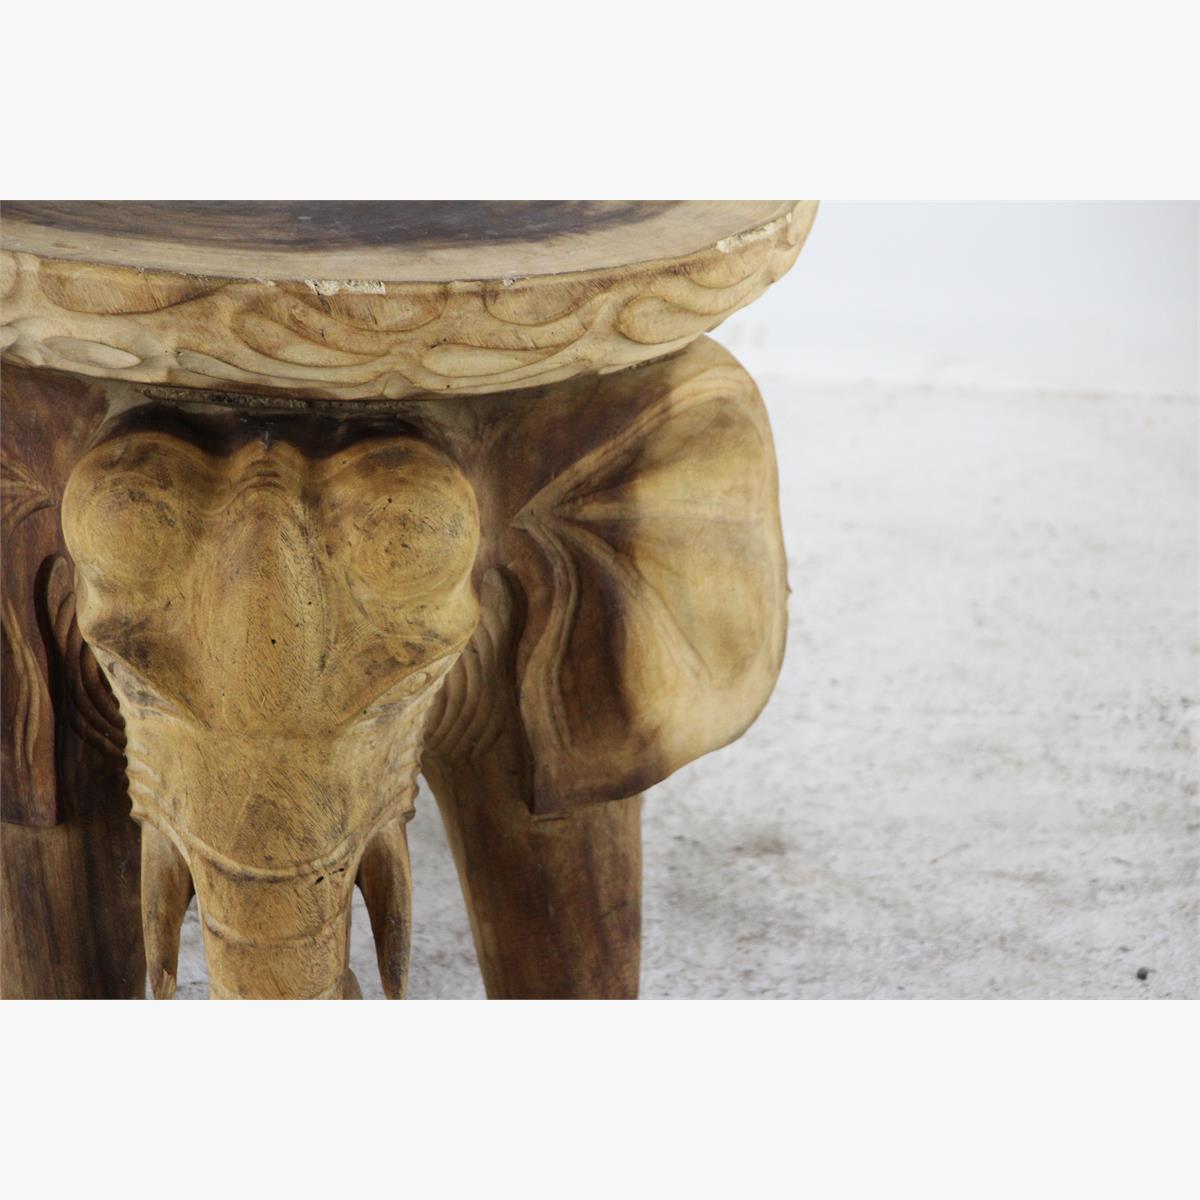 Afbeeldingen van massieve hout salontafel olifant